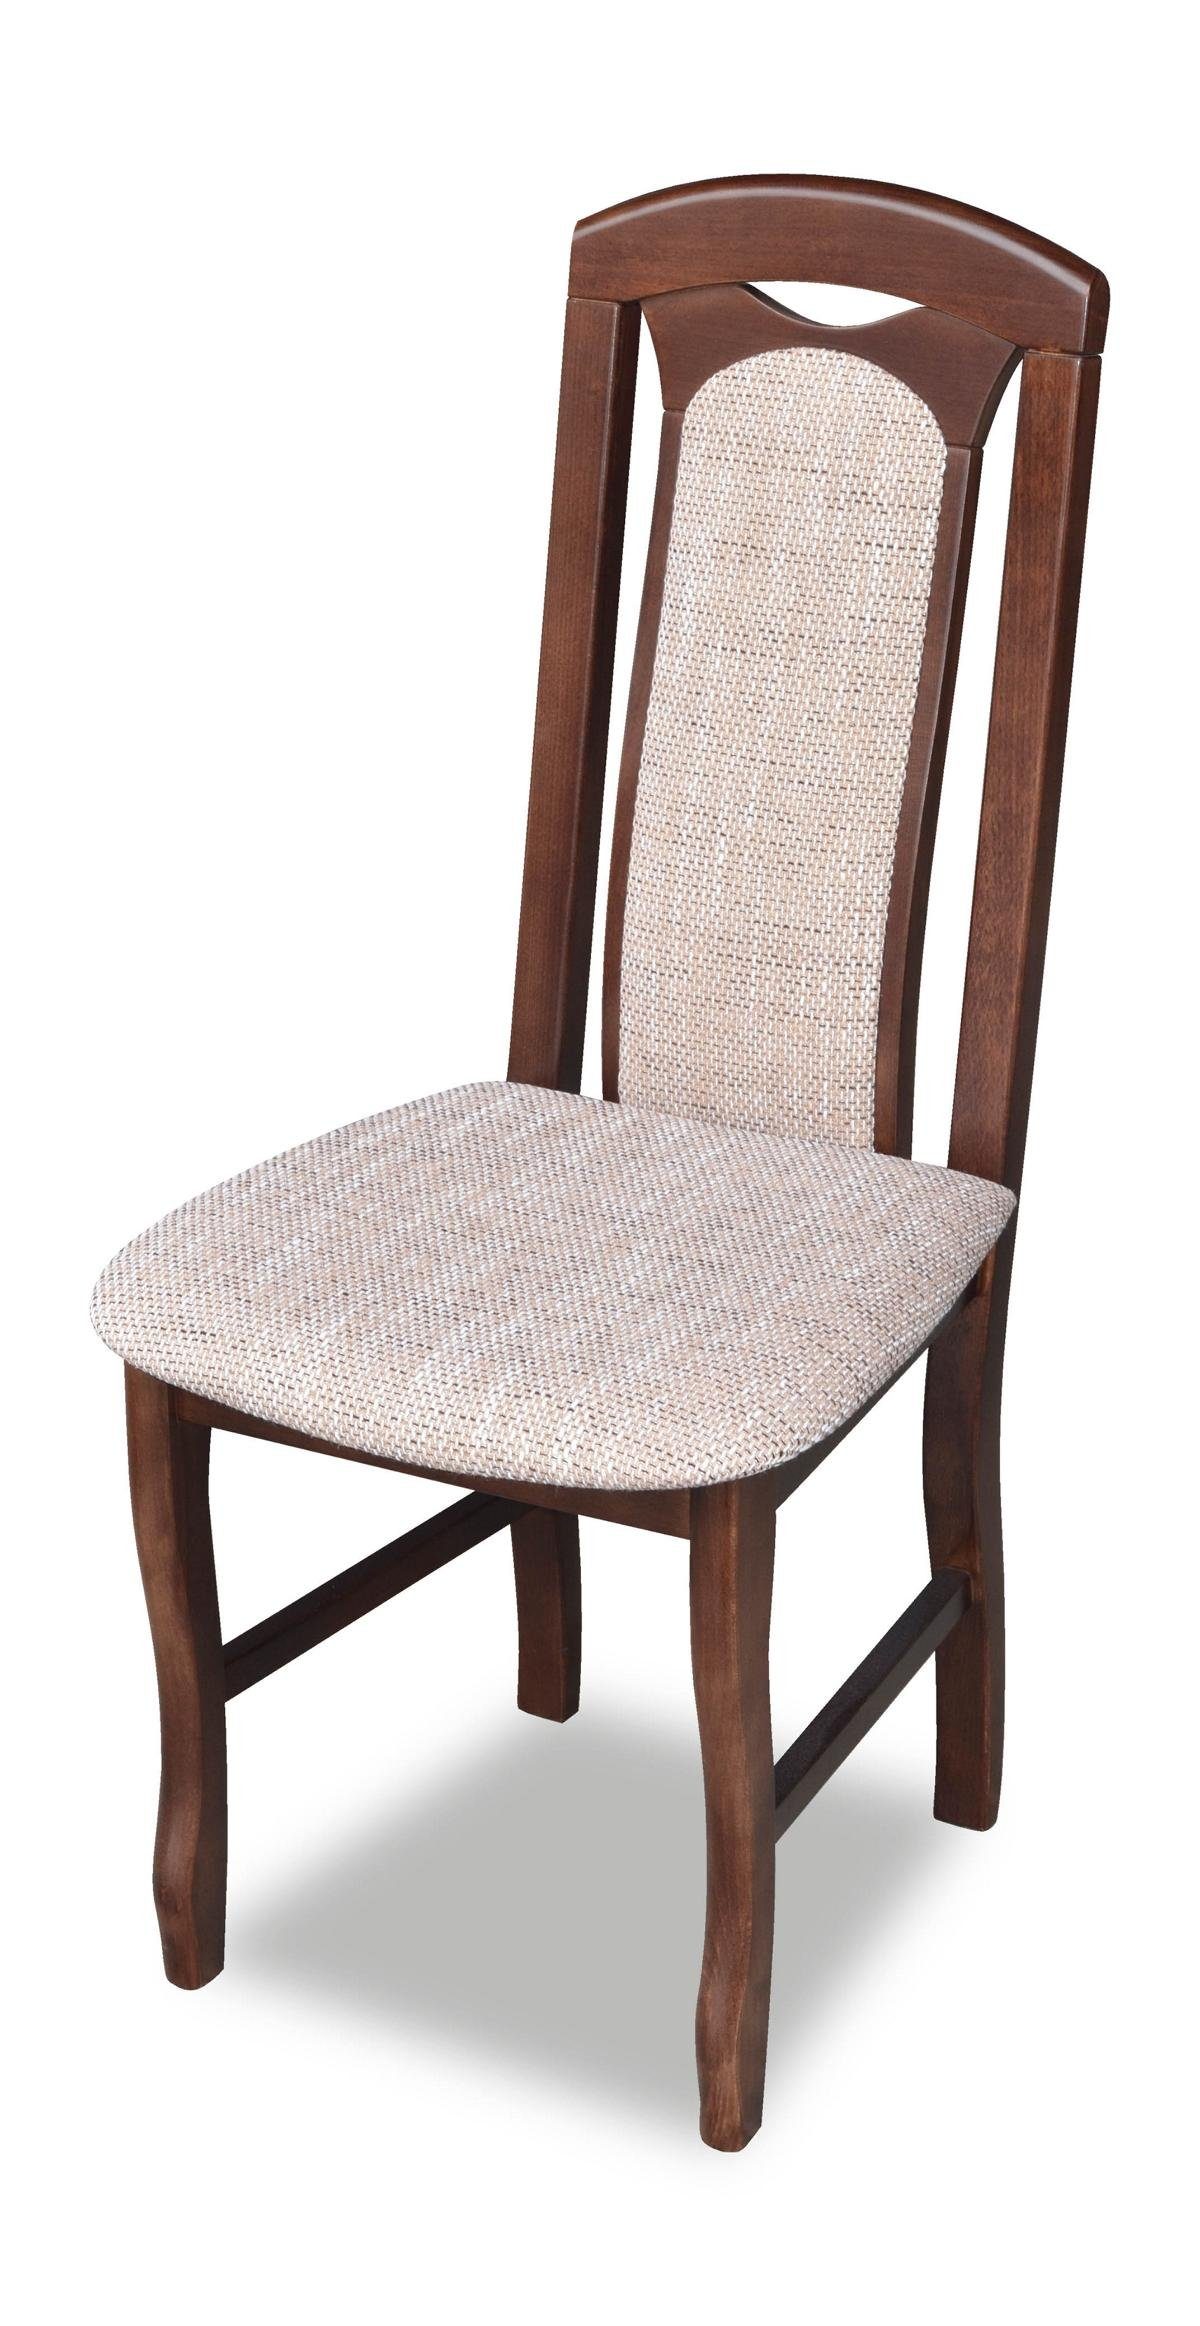 JVmoebel Stuhl, Klassischer Stuhl Landhaus Möbel Esszimmer Stühle Holz Polster Möbel Polster